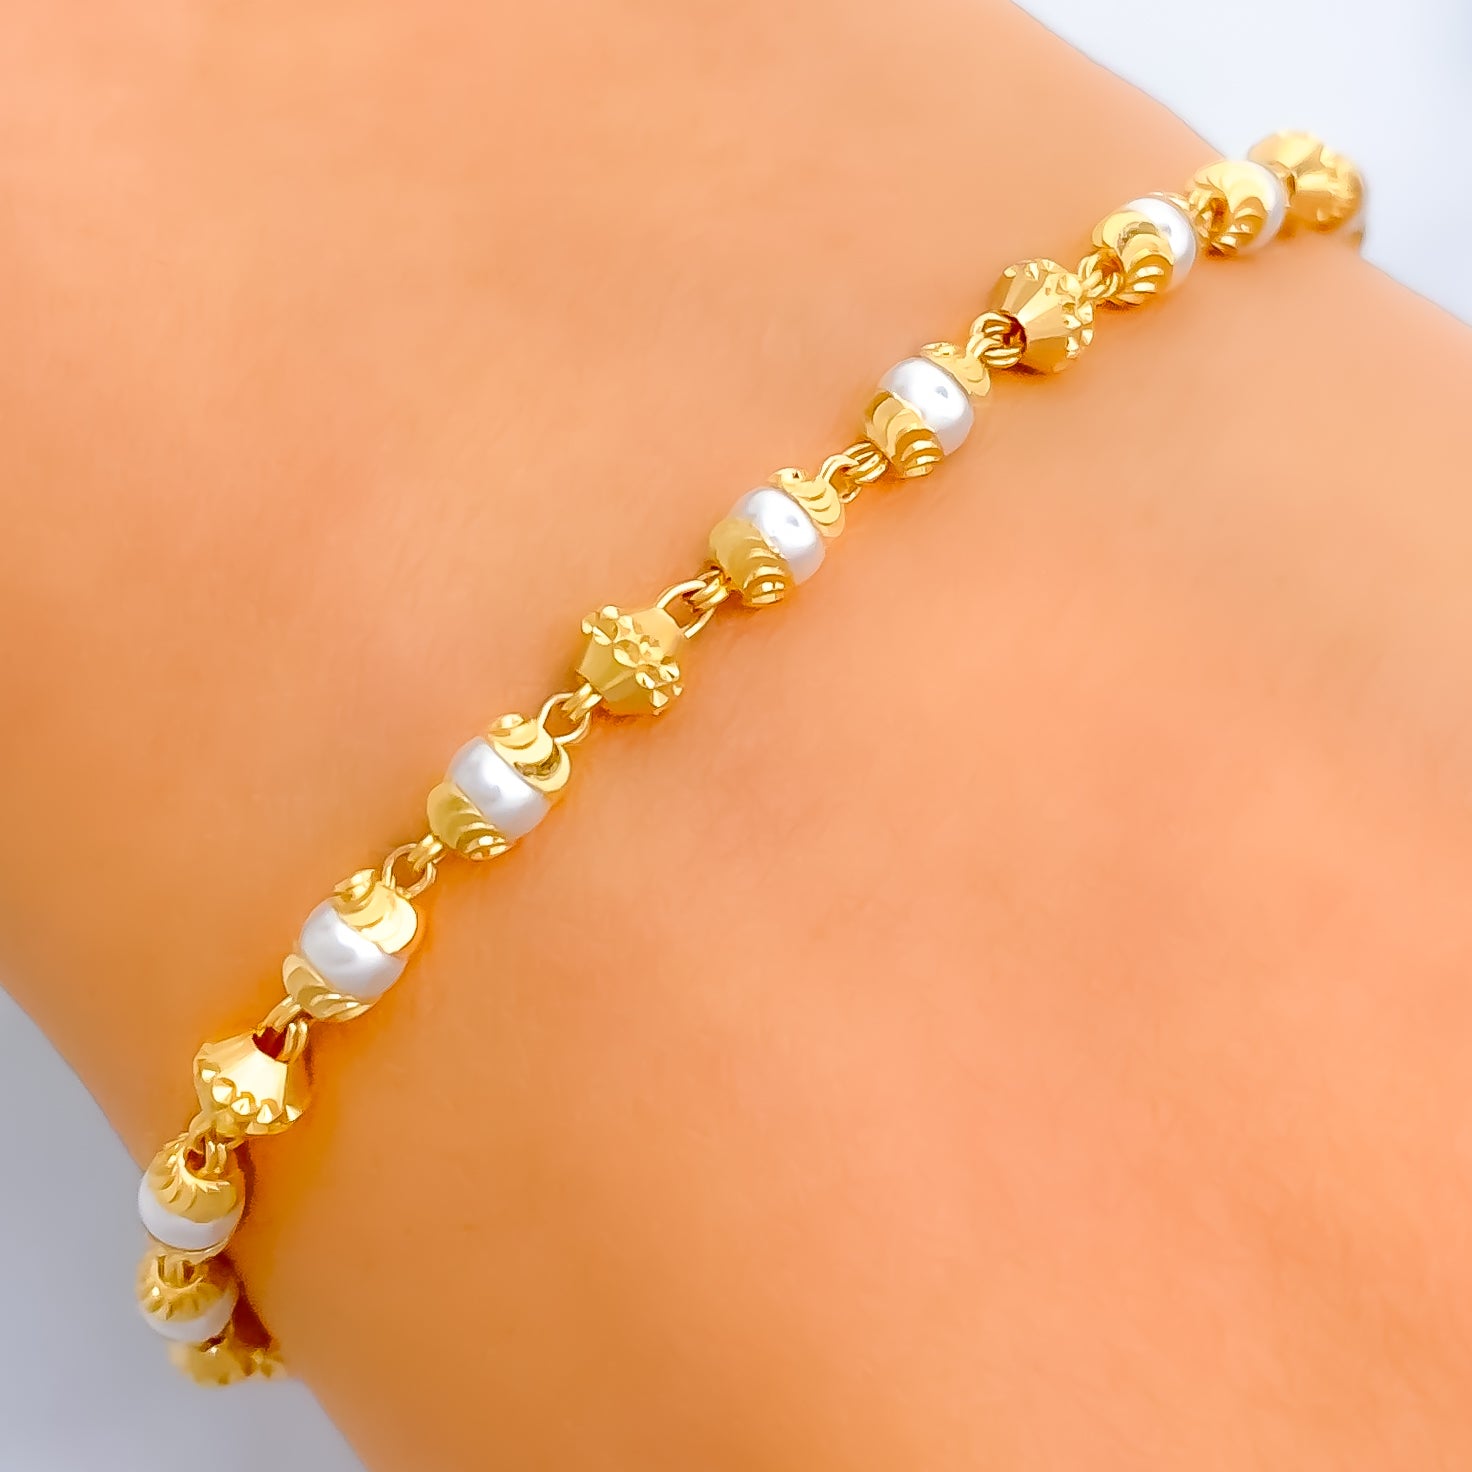 Charlotte Delicate Gold Bracelet | Julie Vos